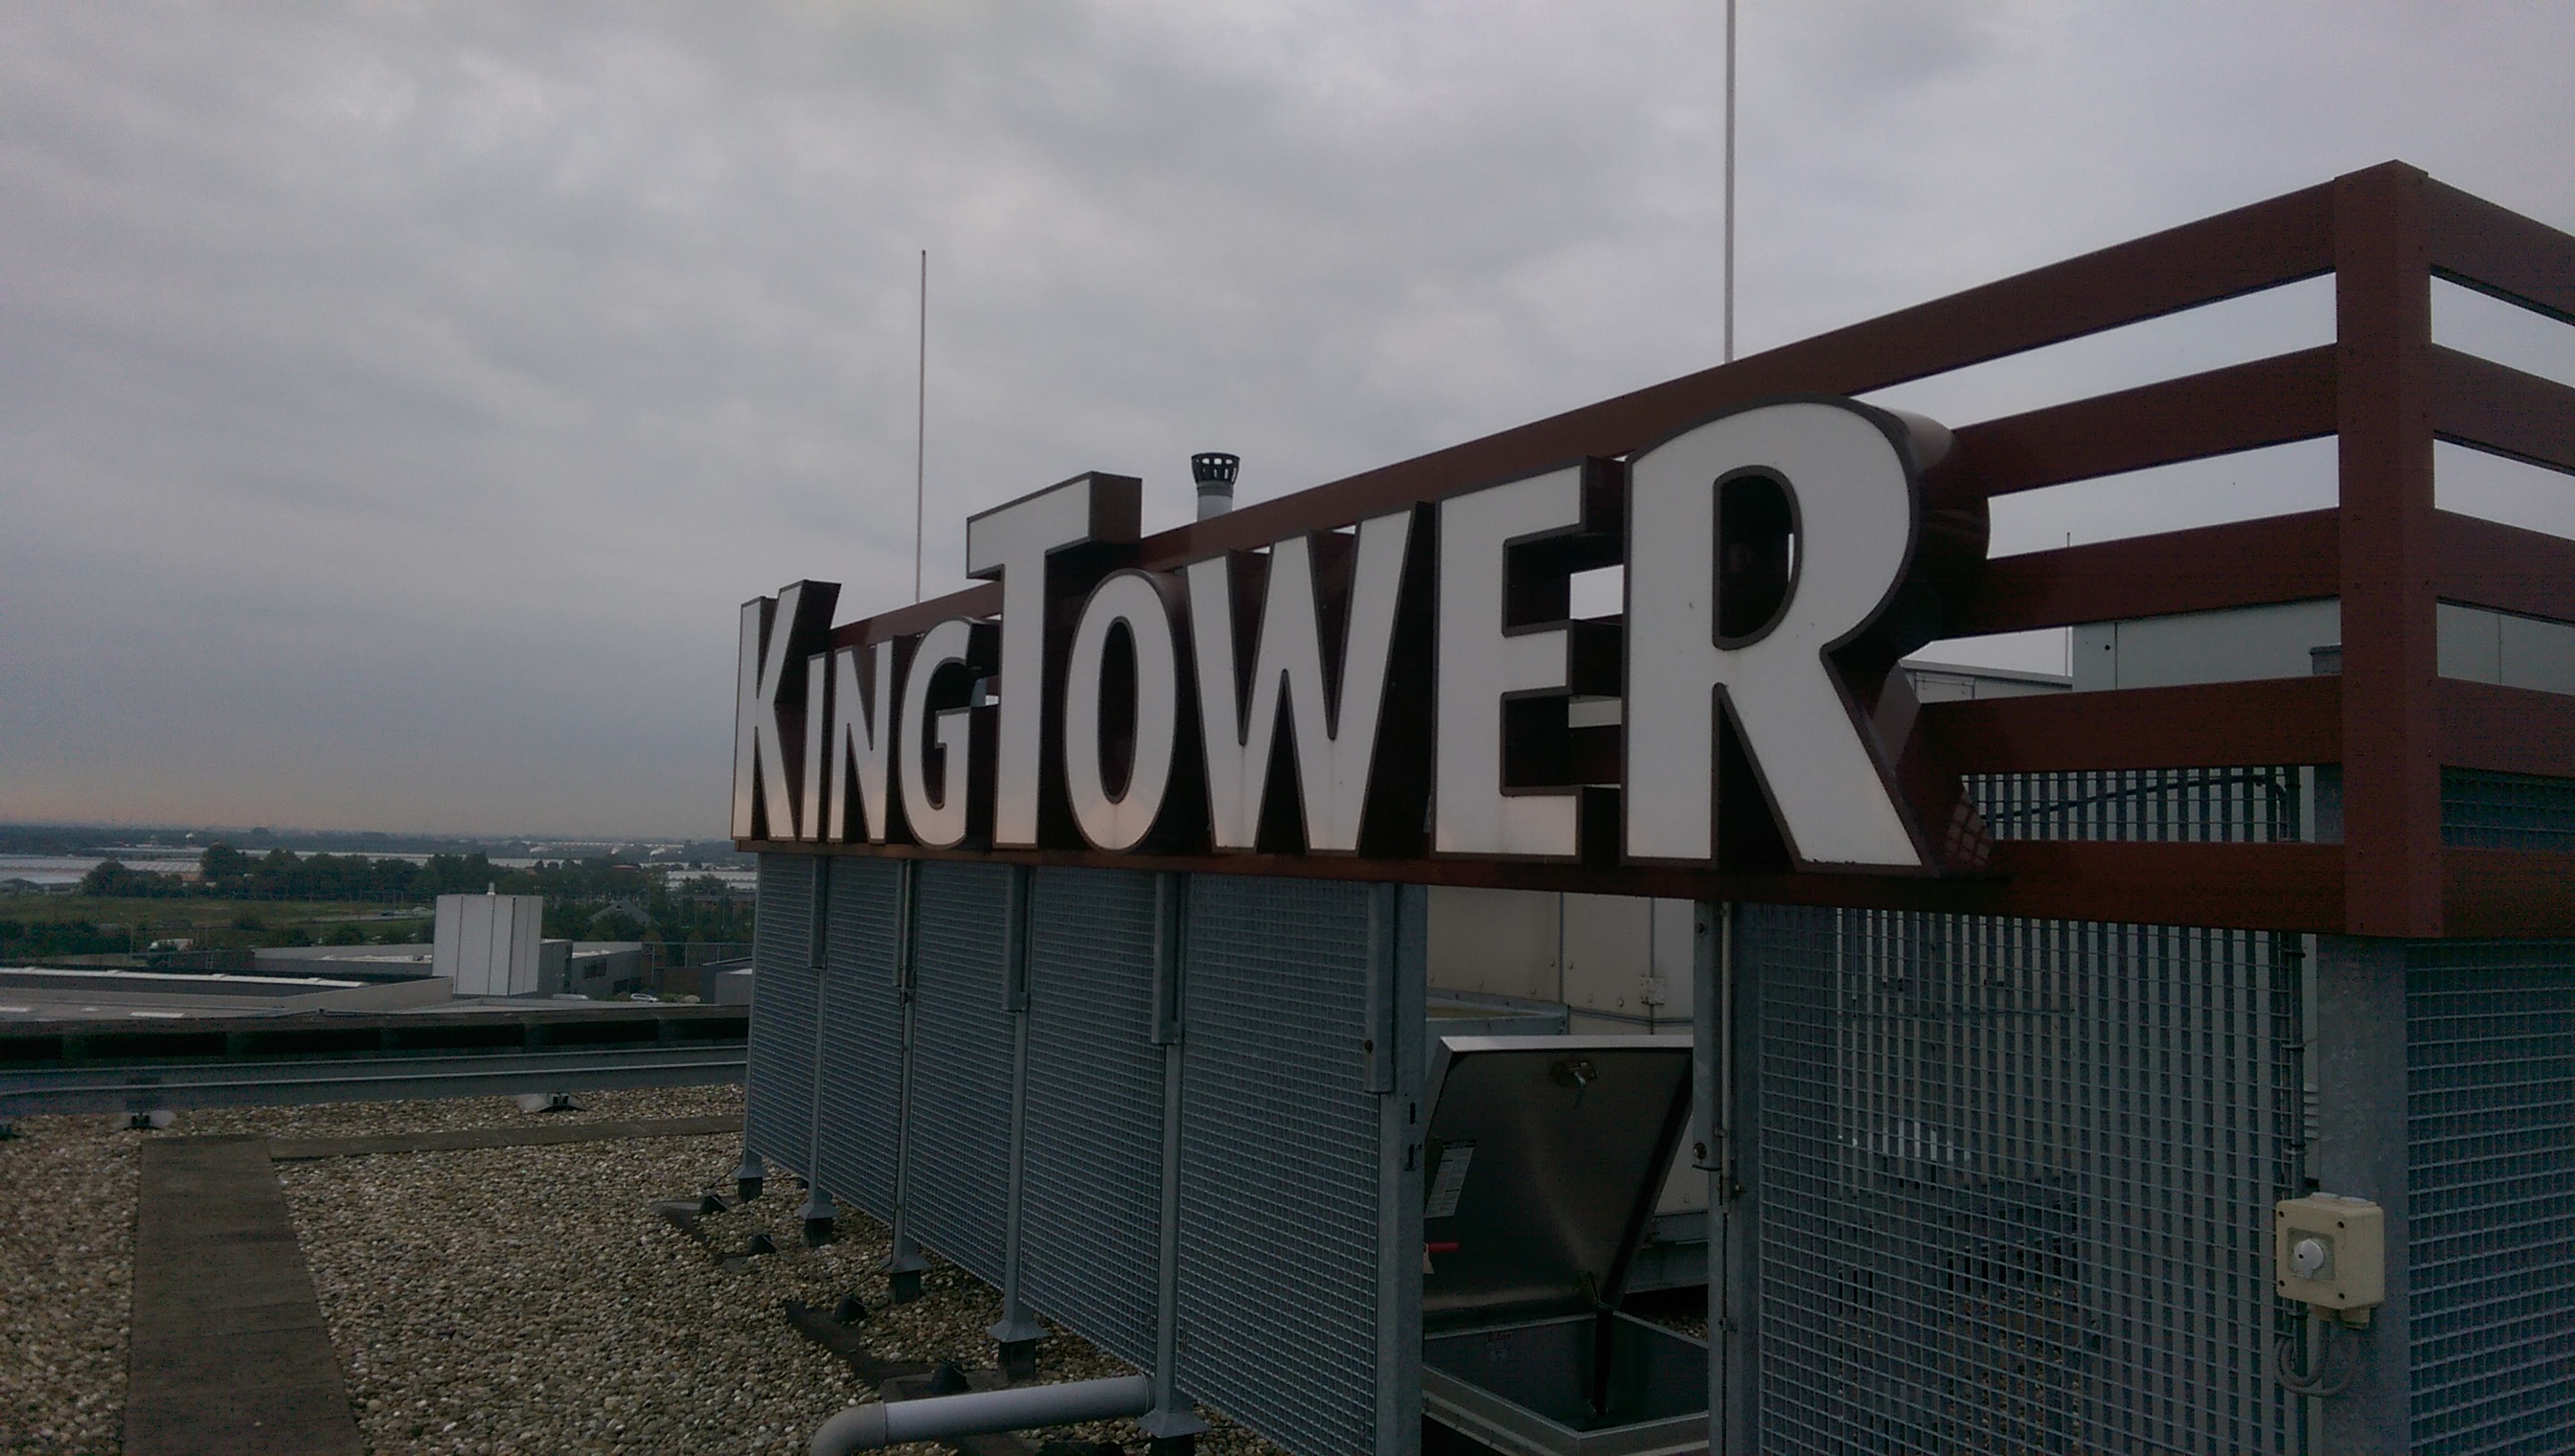 KingTower Voorzien Van LED-verlichting